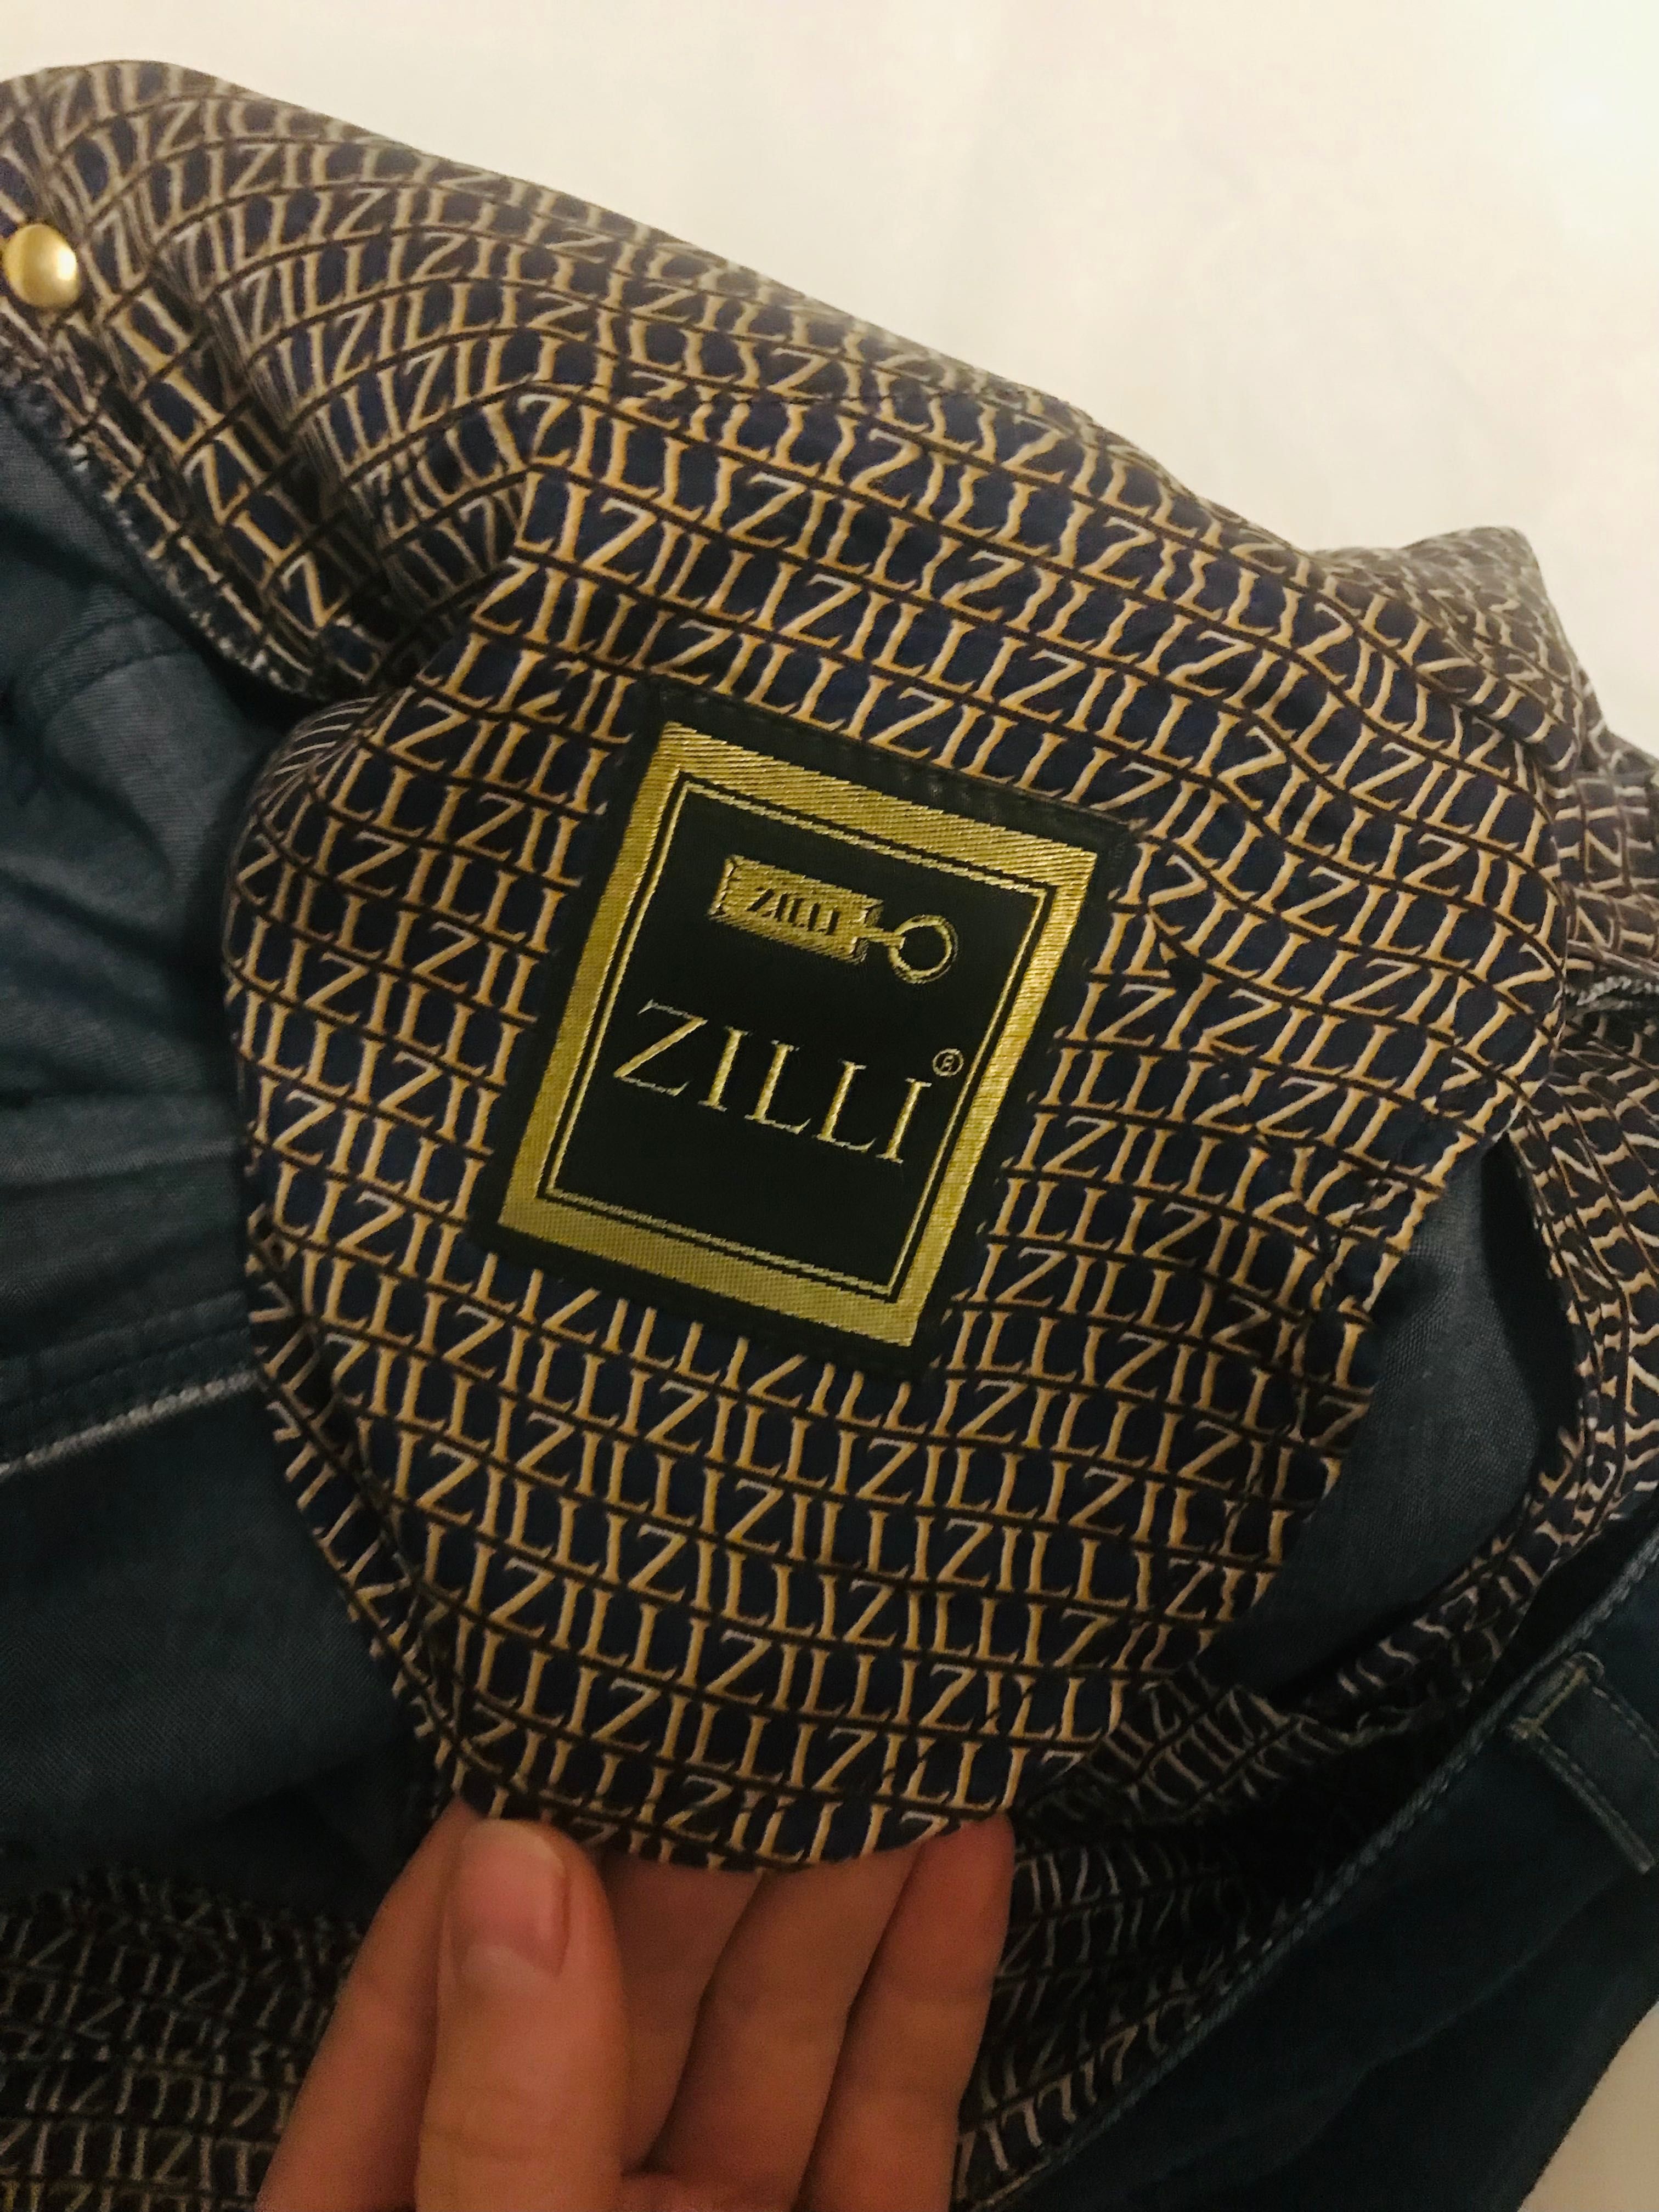 Фирменные мужские джинсы Zilli.Италия.Большой размер